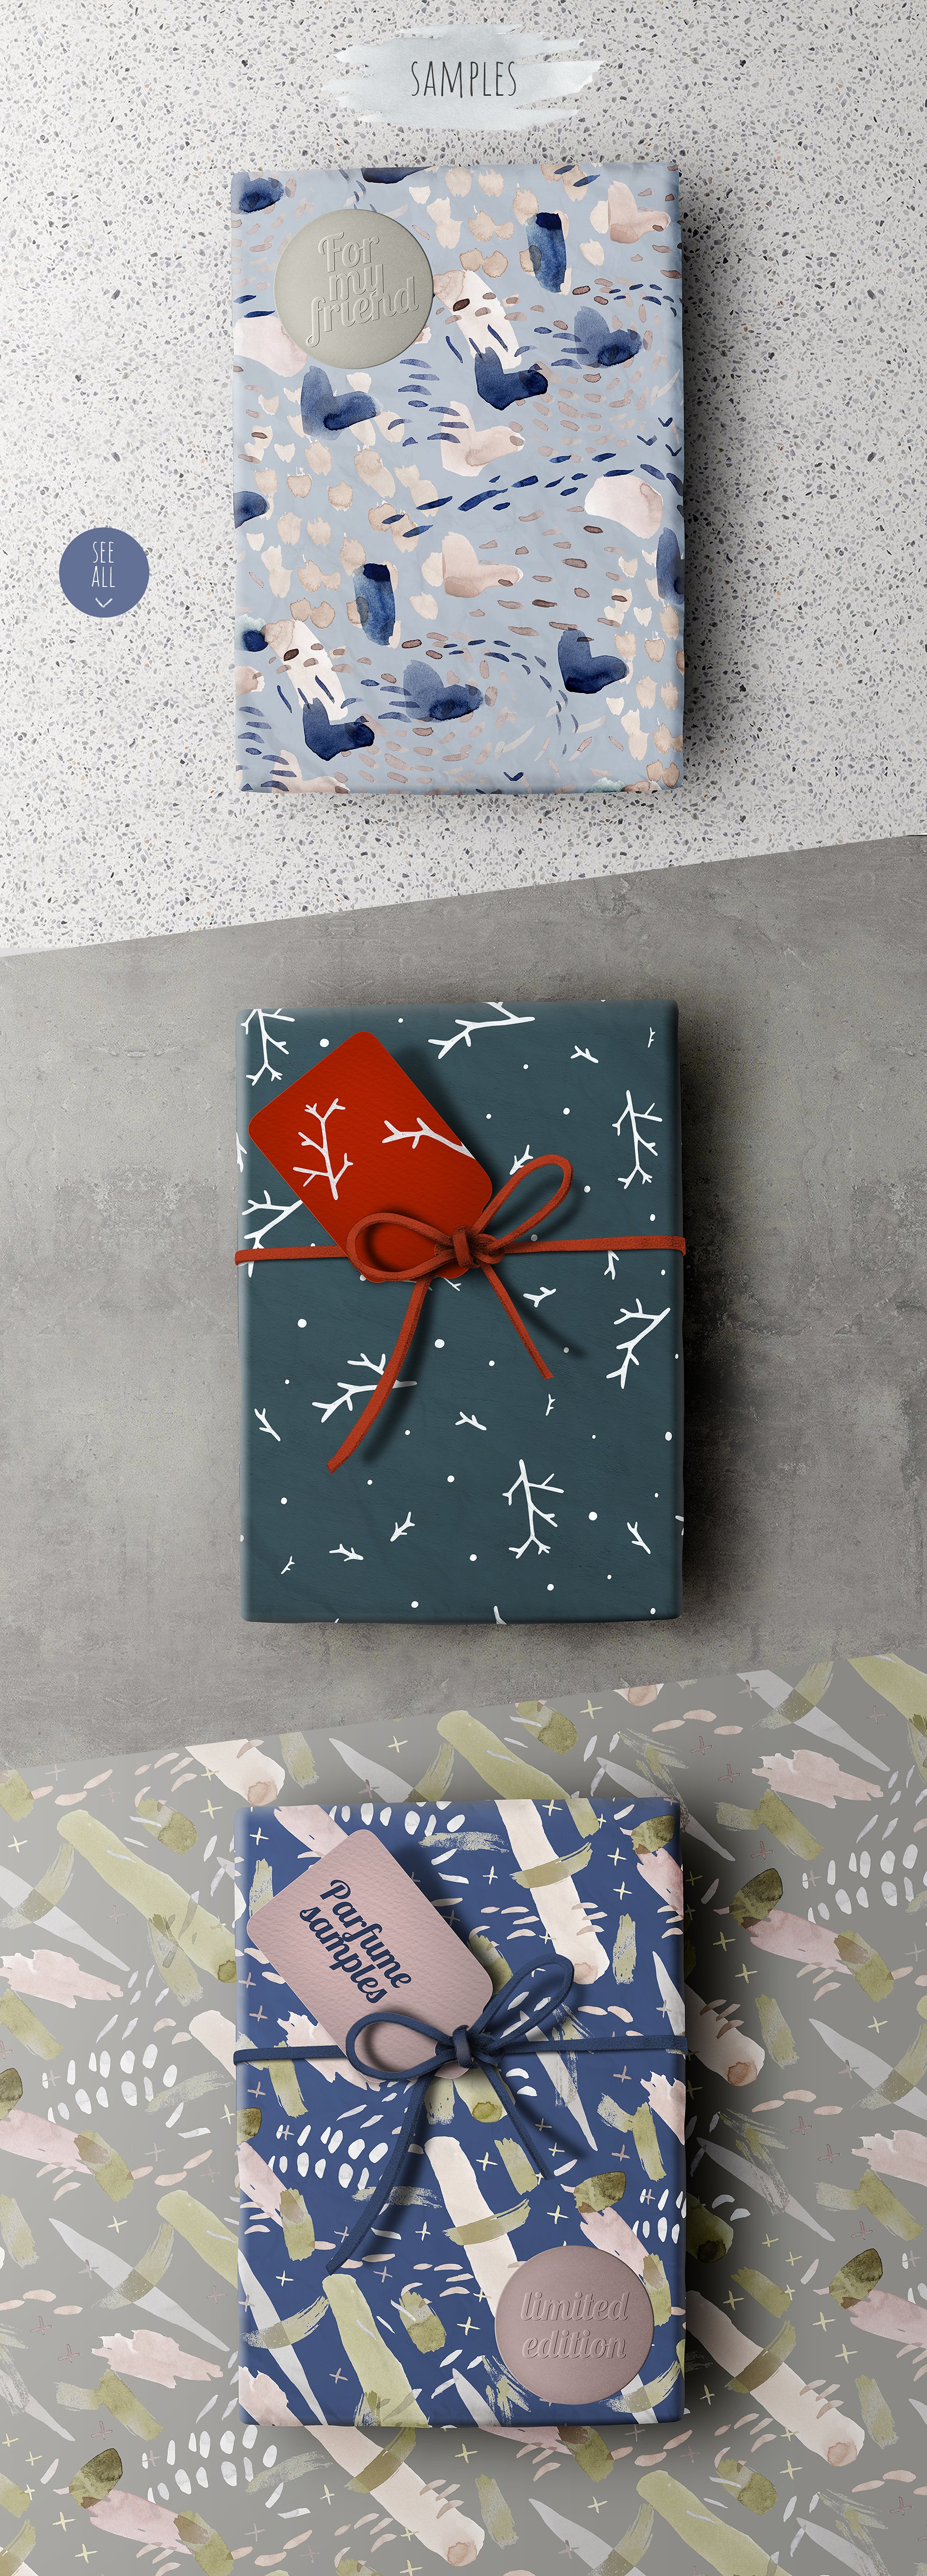 高品质的礼品盒展示样机PSD模版 Gift box mock